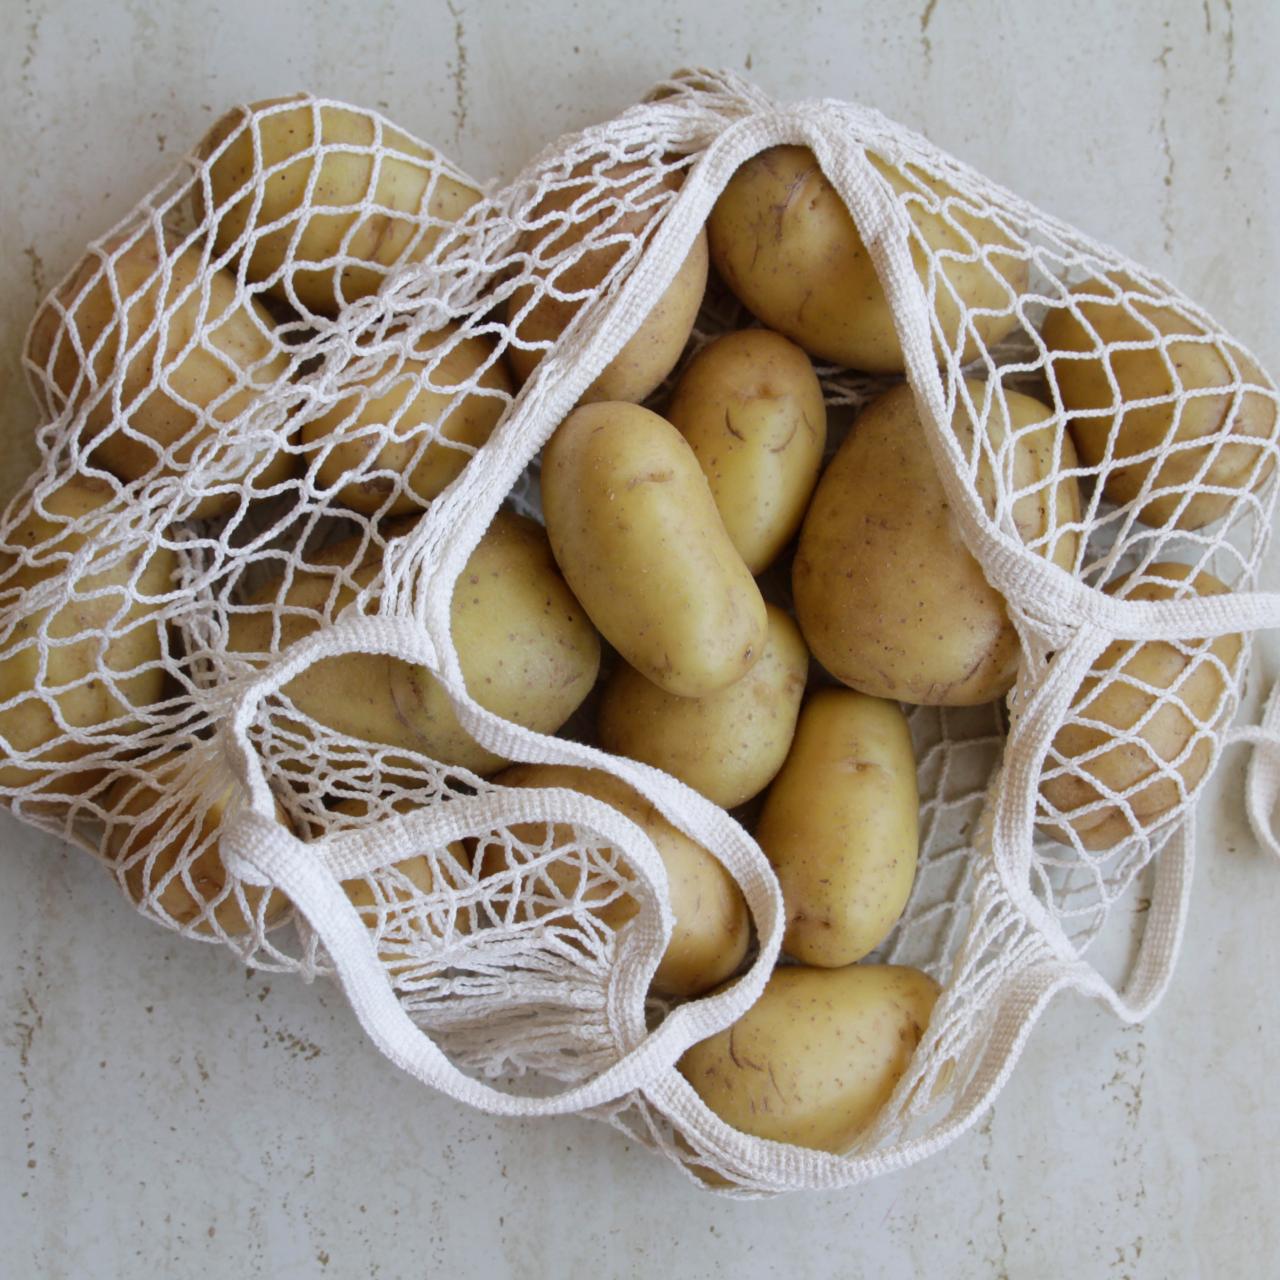 Potato/Banana or Bread Bags Fresh Vegetable Cotton Breathable